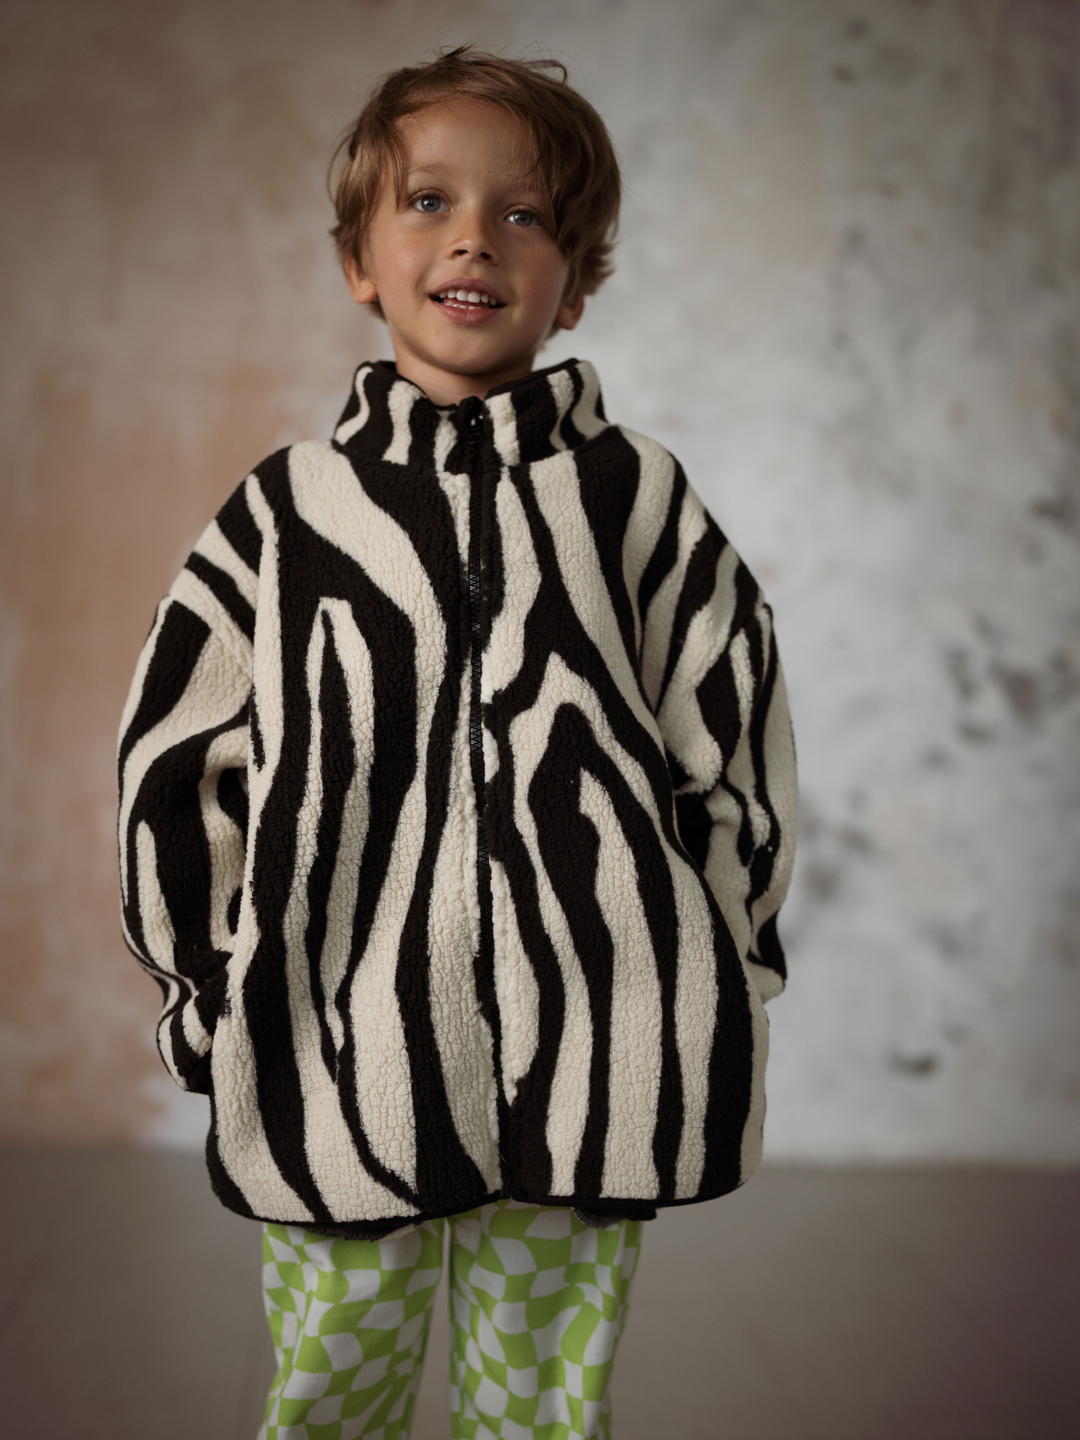 Boy wearing a kids fleece jacket in a black and white tiger stripe pattern.